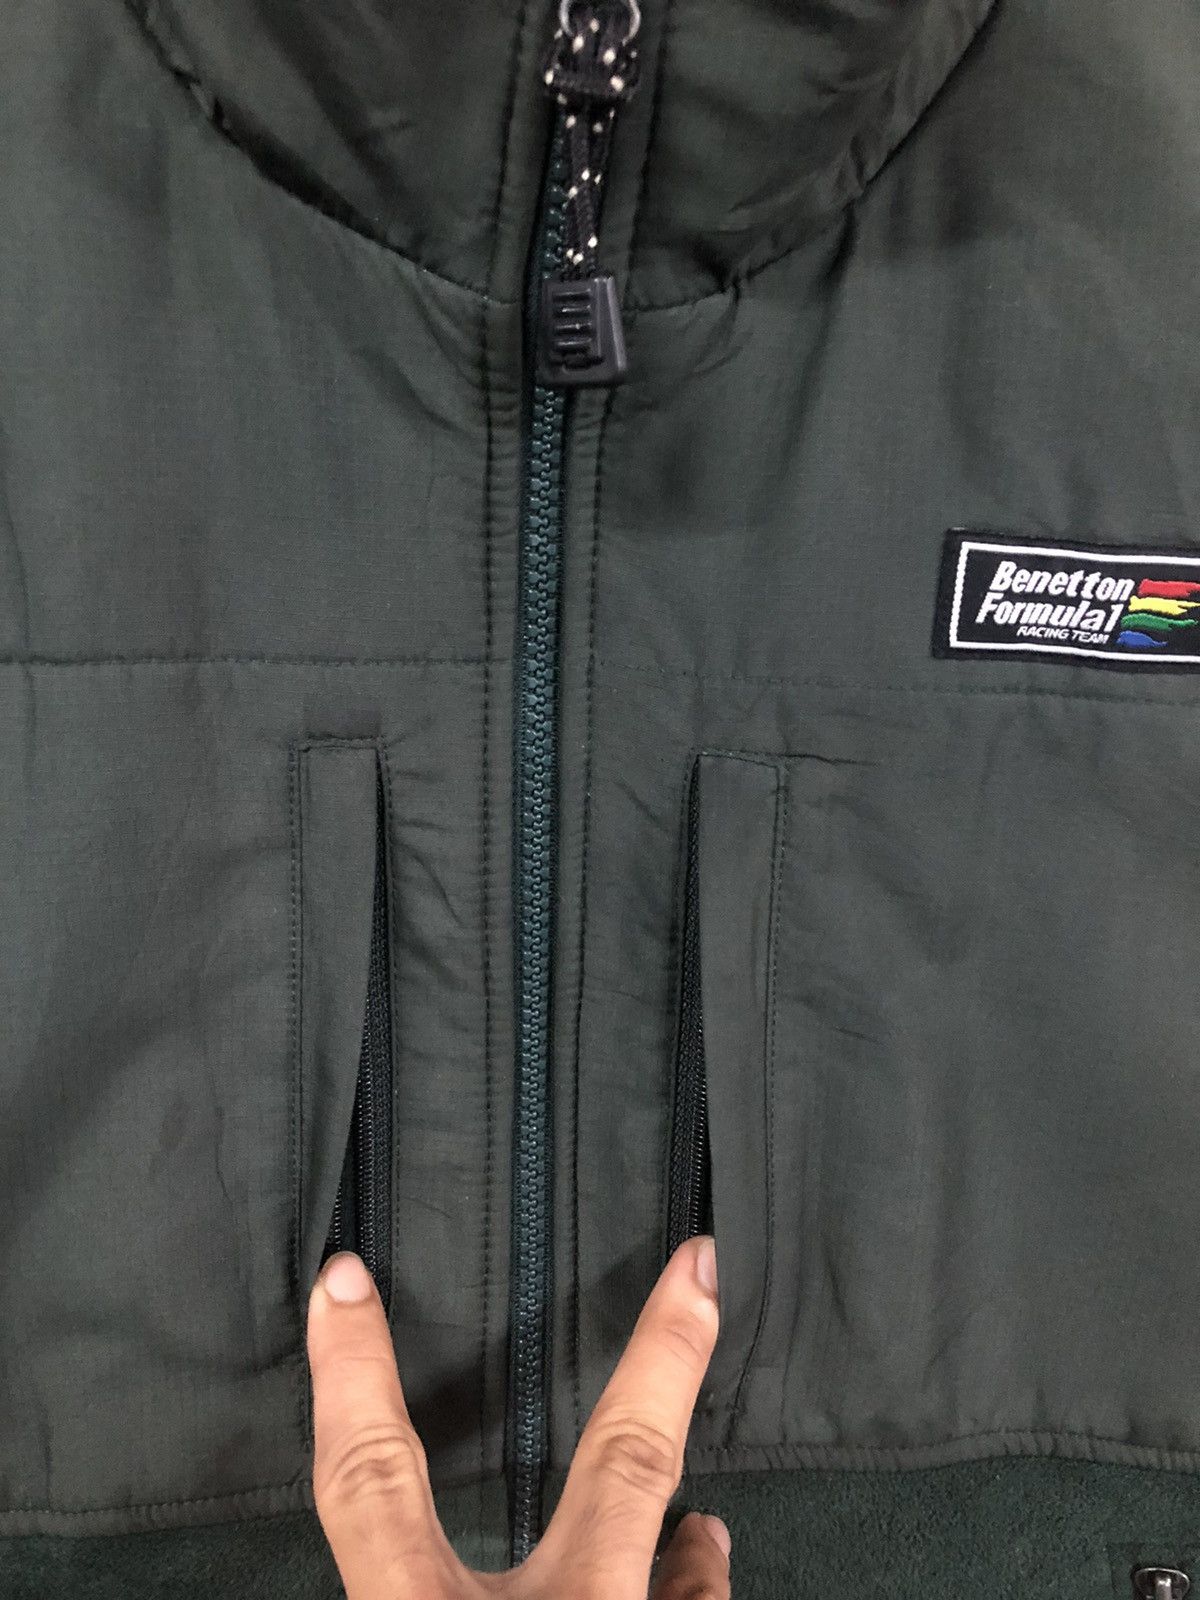 Sports Specialties - Benetton Formula 1 Racing Team Vest Jacket - 6